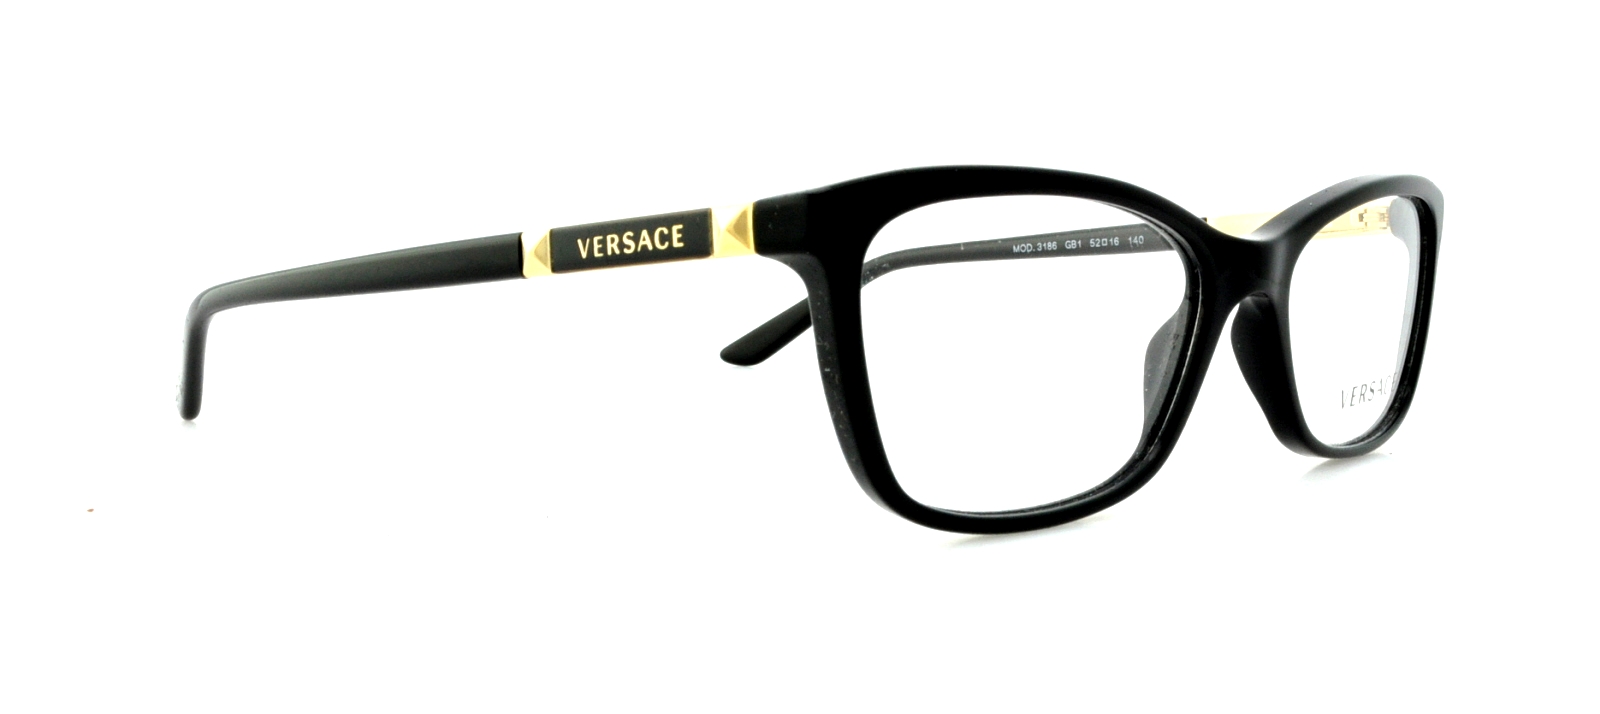 Designer Frames Outlet. Versace Eyeglasses VE3186